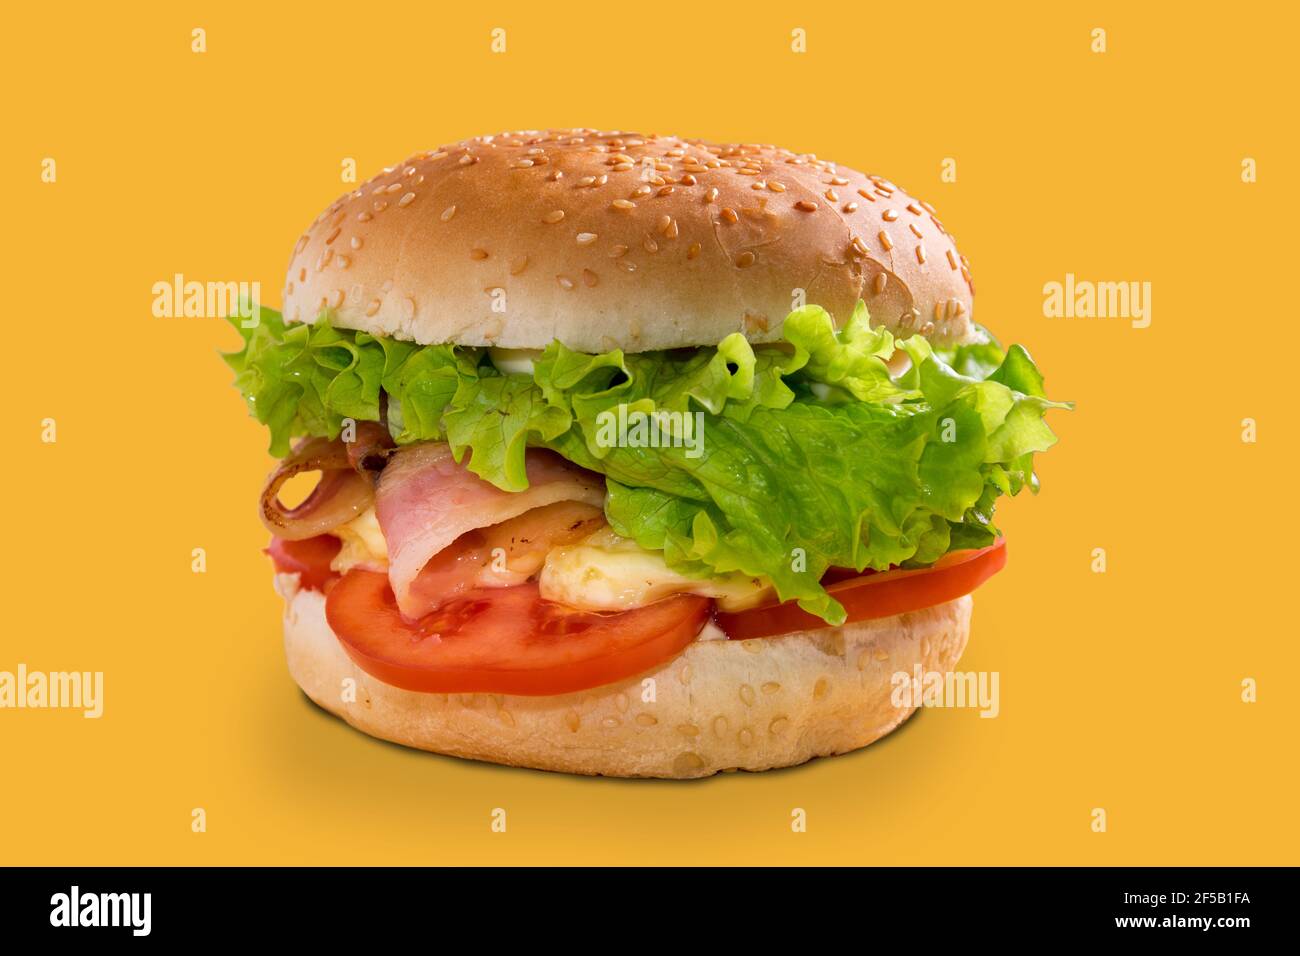 cheeseburger con pancetta, panino ripieno con pancetta, fette di pomodoro, formaggio e insalata di lattuga, isolato su sfondo giallo Foto Stock